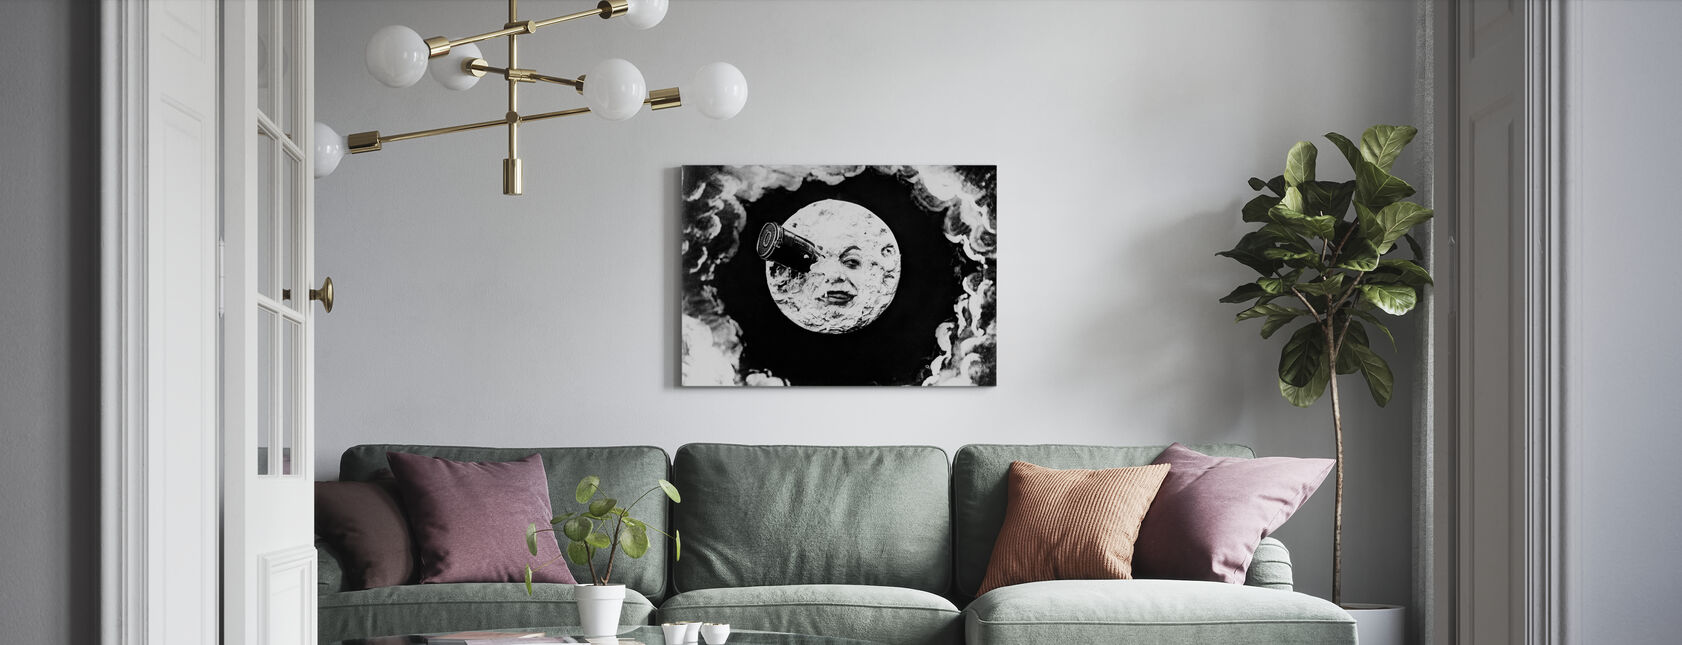 Voyage sur la Lune - Georges Melies - Impression sur toile - Salle à manger